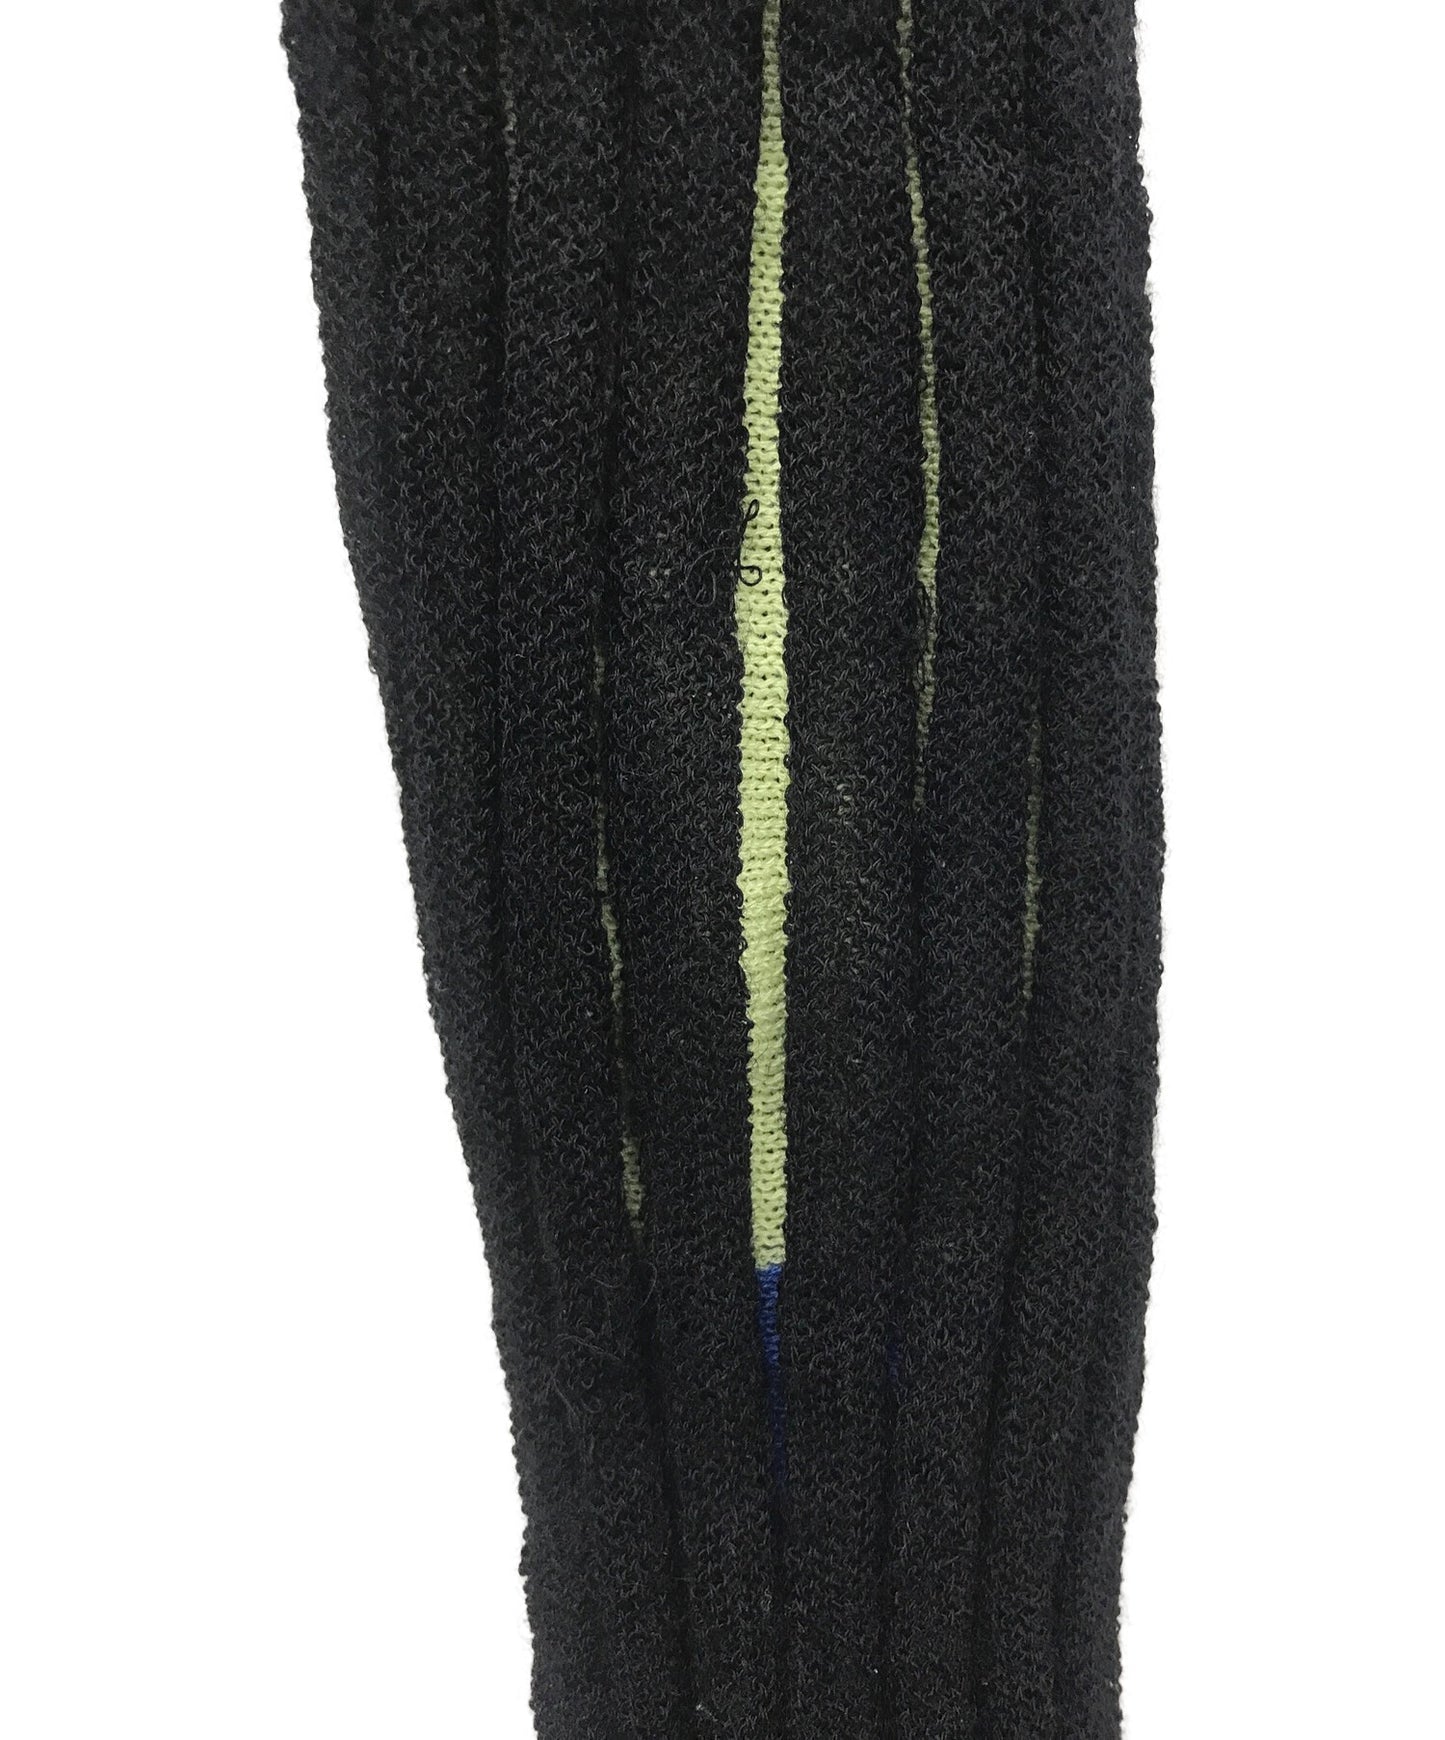 จีบโปรด chira chira knit / turtleneck knit pp83-kk761